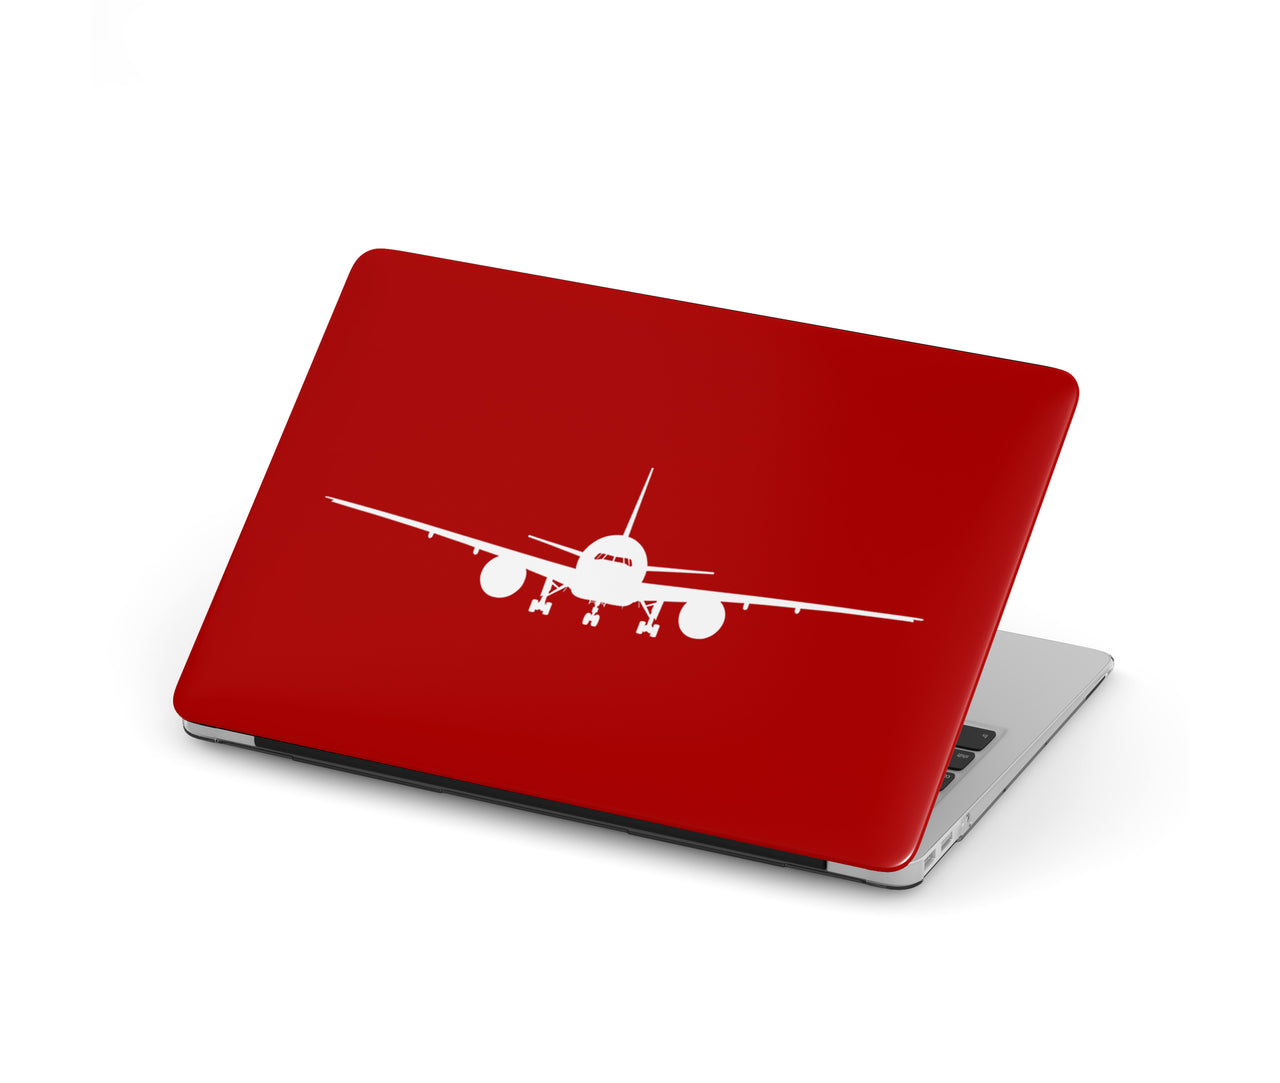 Boeing 777 Silhouette Designed Macbook Cases